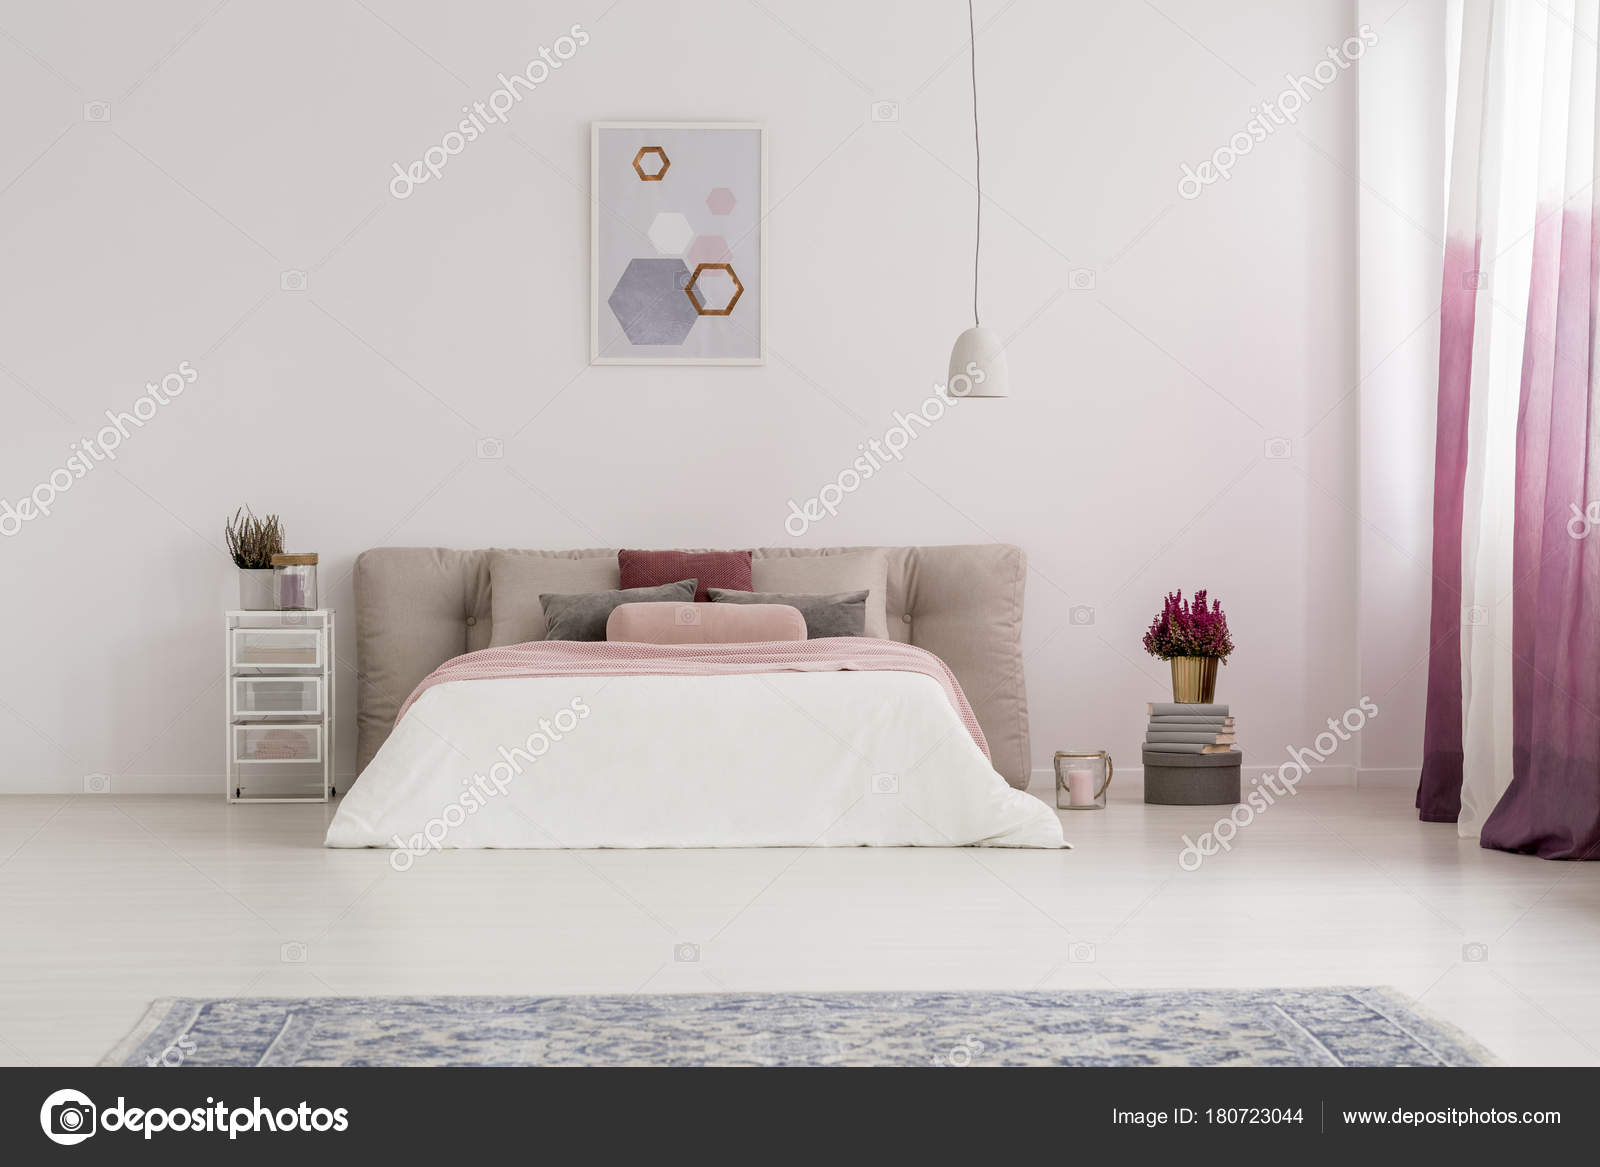 Fonkelnieuw Witte lamp boven bed — Stockfoto © photographee.eu #180723044 AW-11